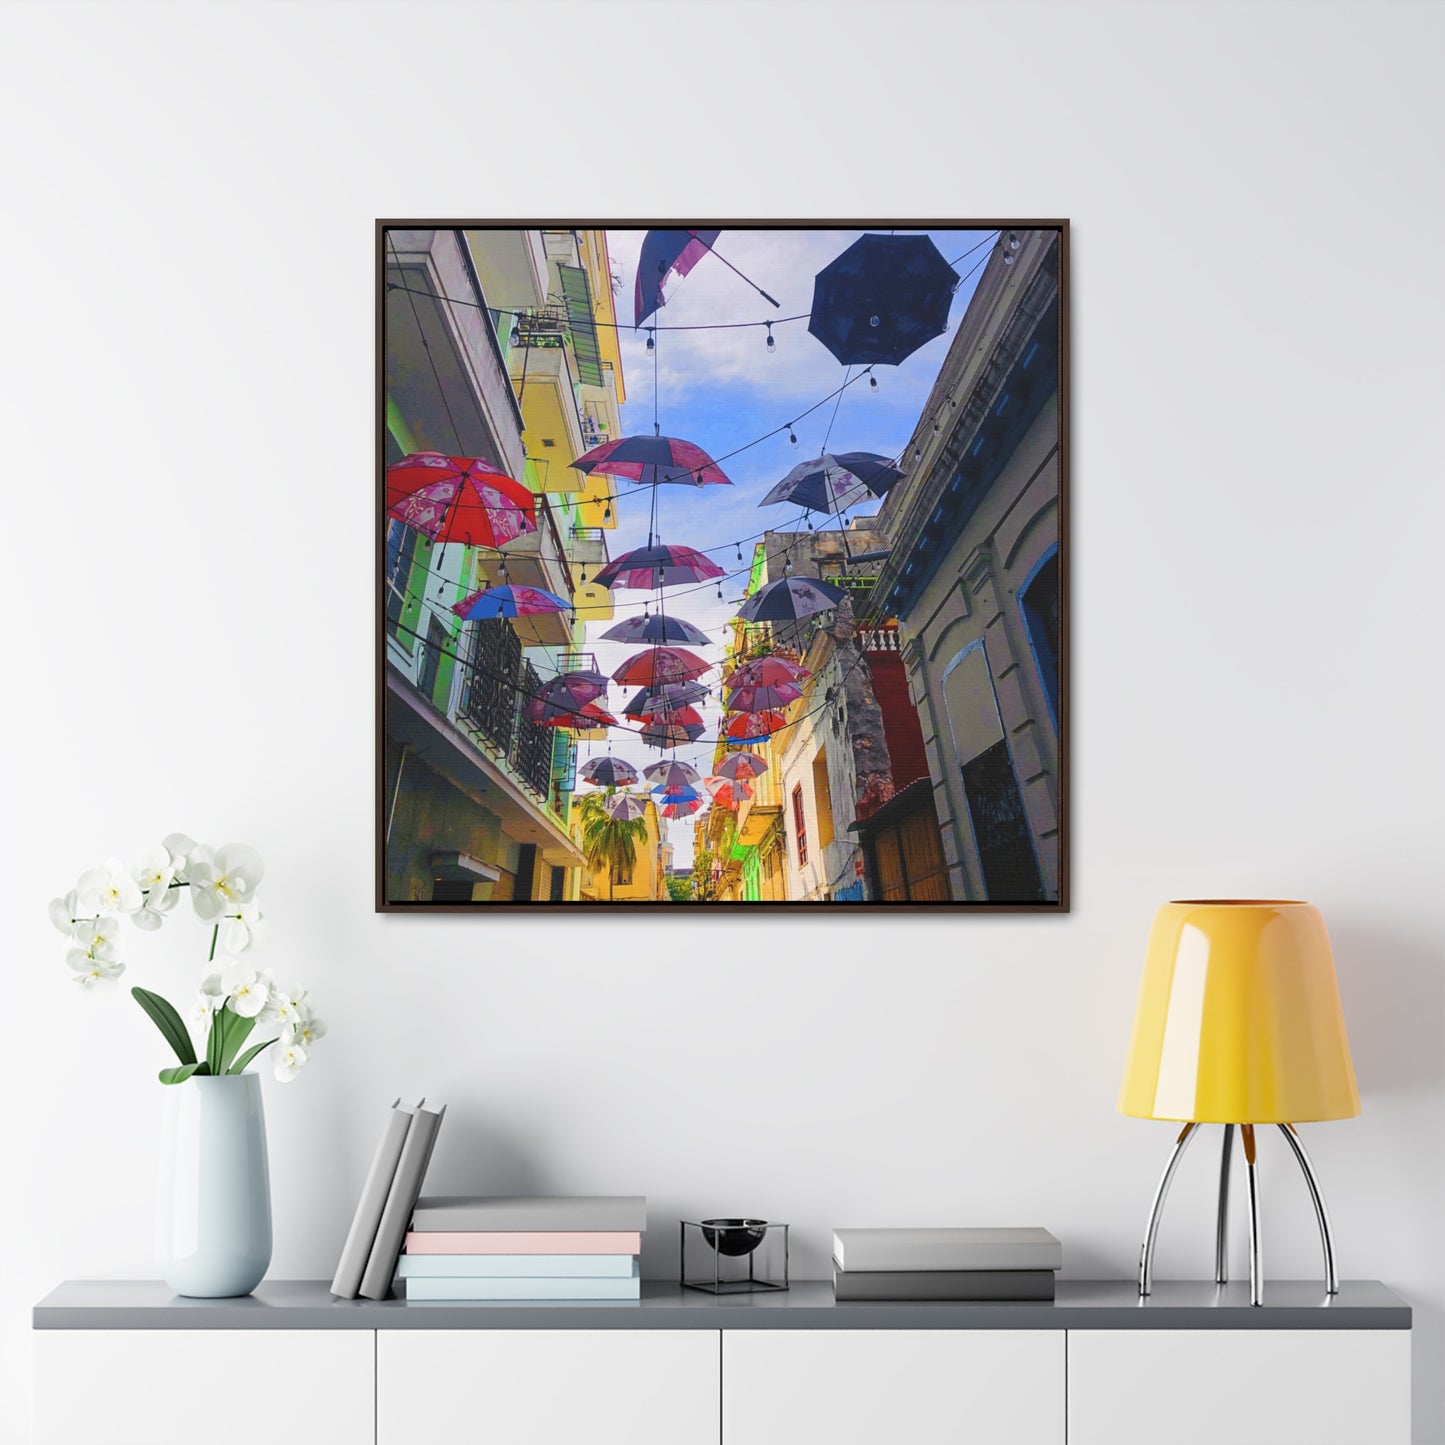 Umbrellas of Havana - Framed Gallery Canvas